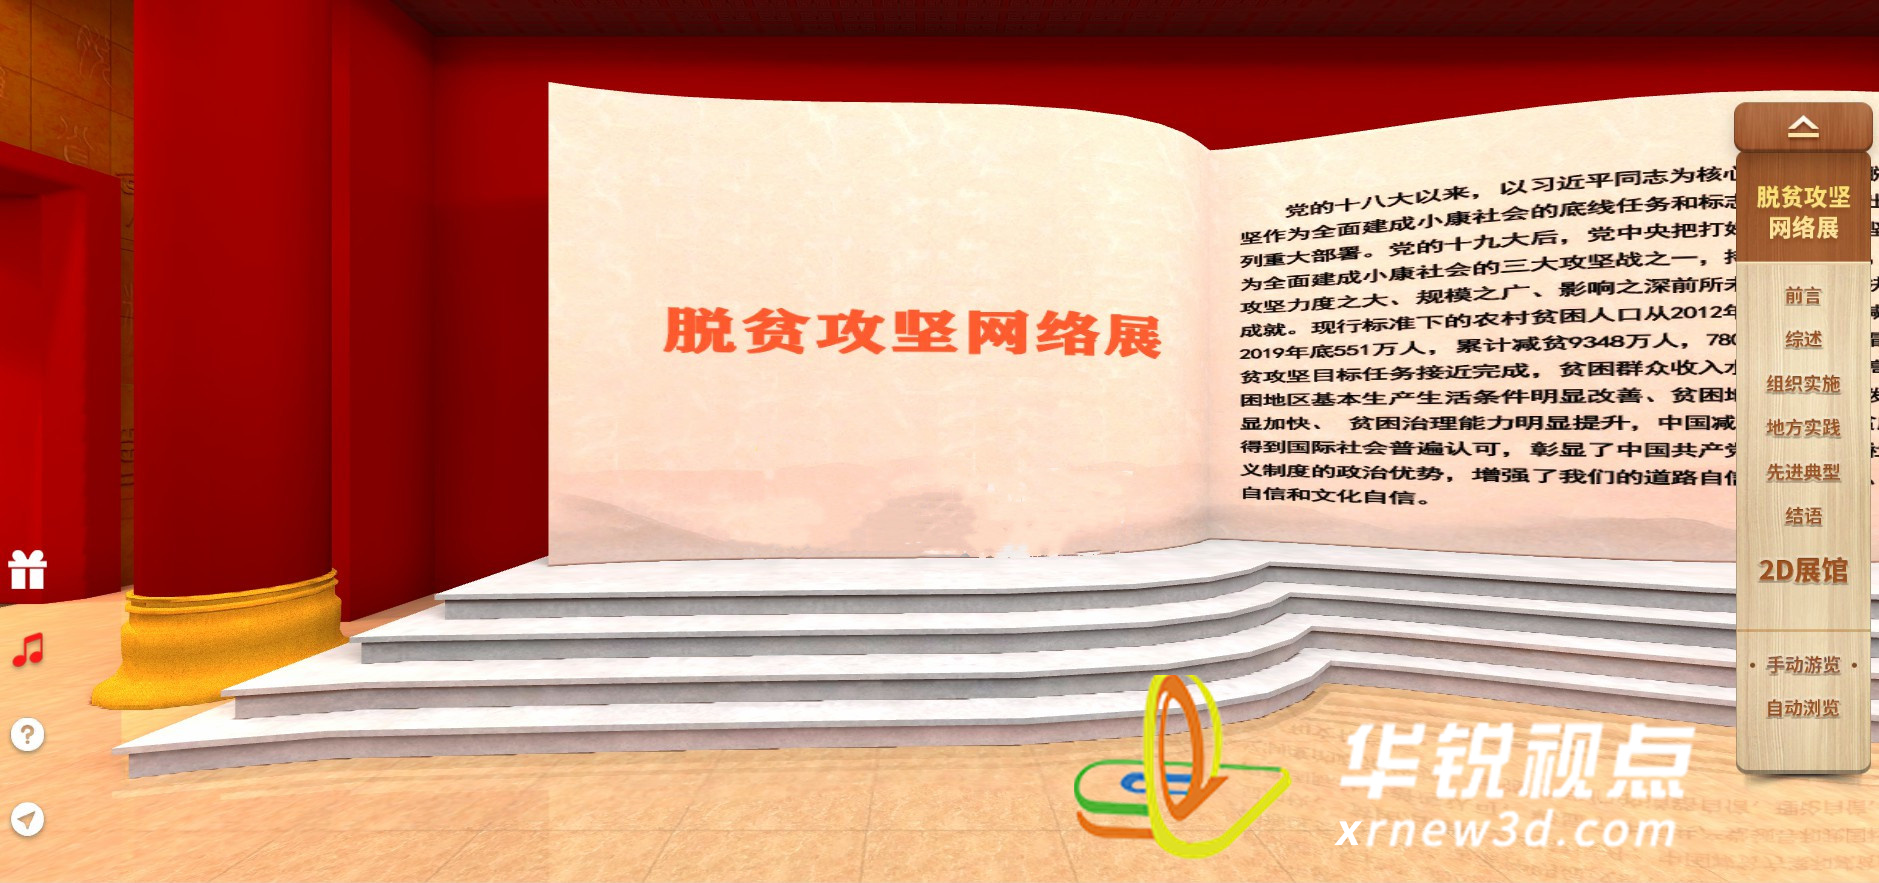 三维虚拟场景构建党建教育展厅，掀起红色教育学习热潮！